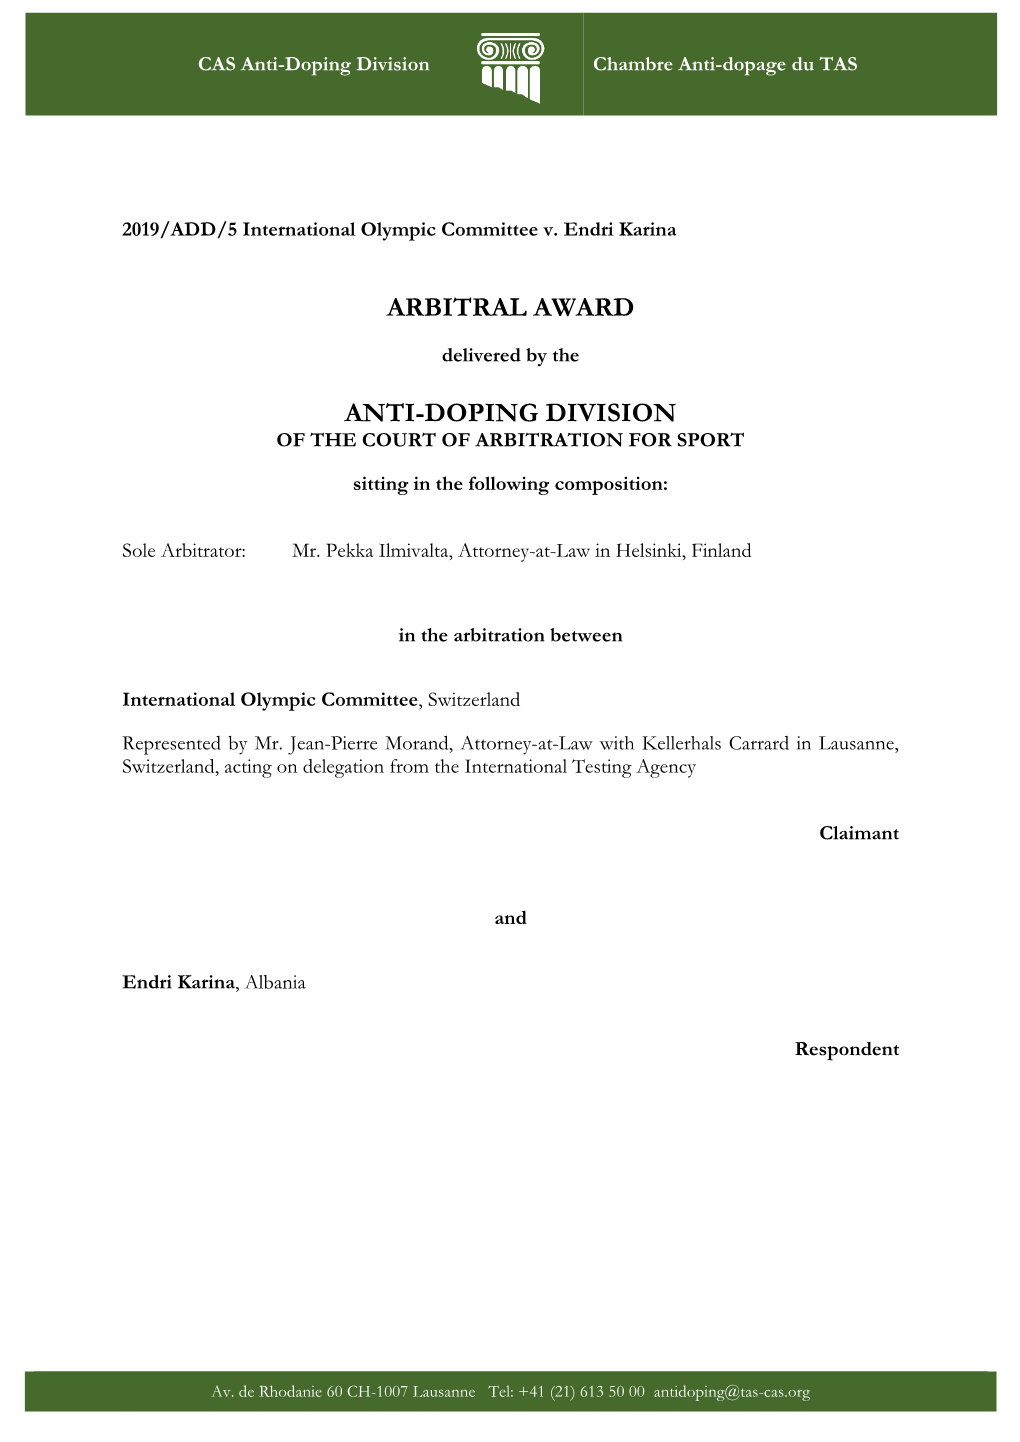 Arbitral Award Anti-Doping Division